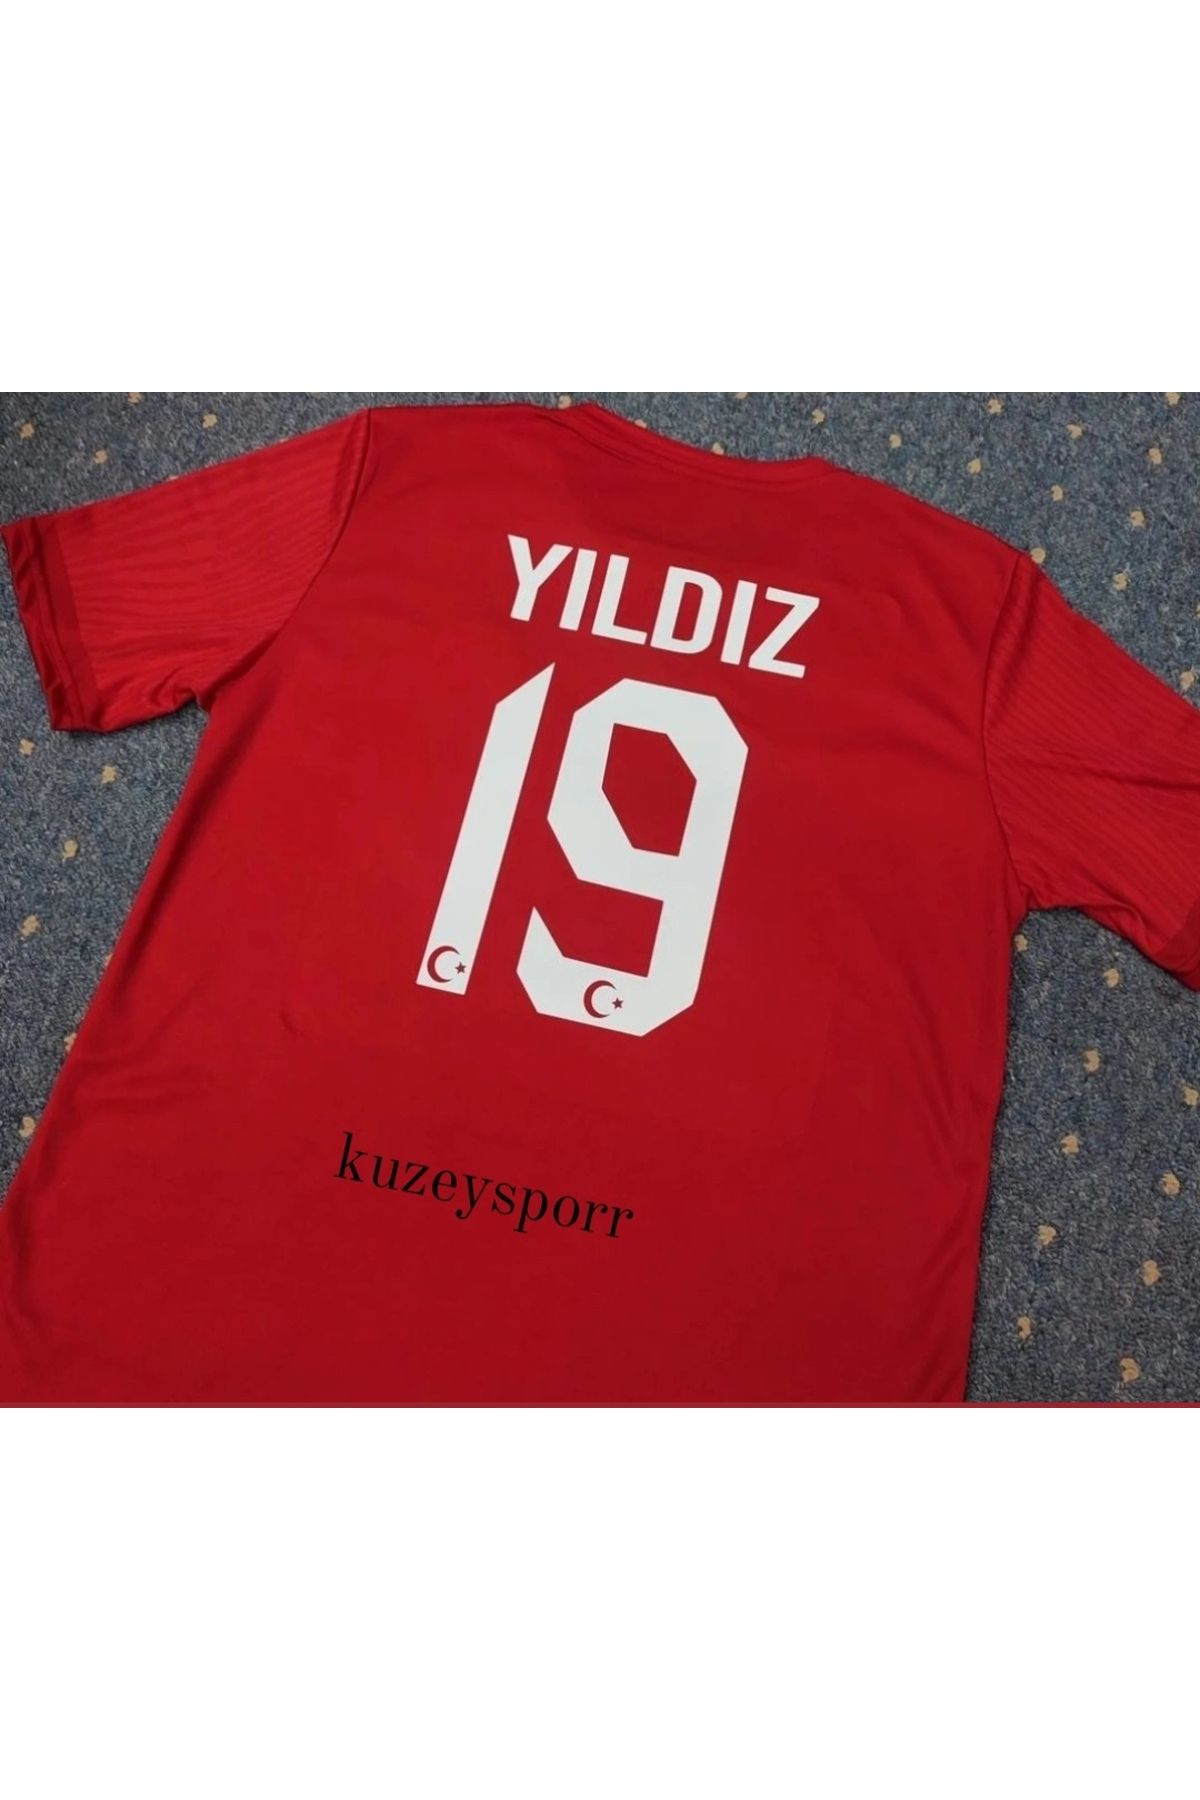 KUZEYSPOR Türkiye Yeni Sezon Milli Takım Forması Kenan Yıldız